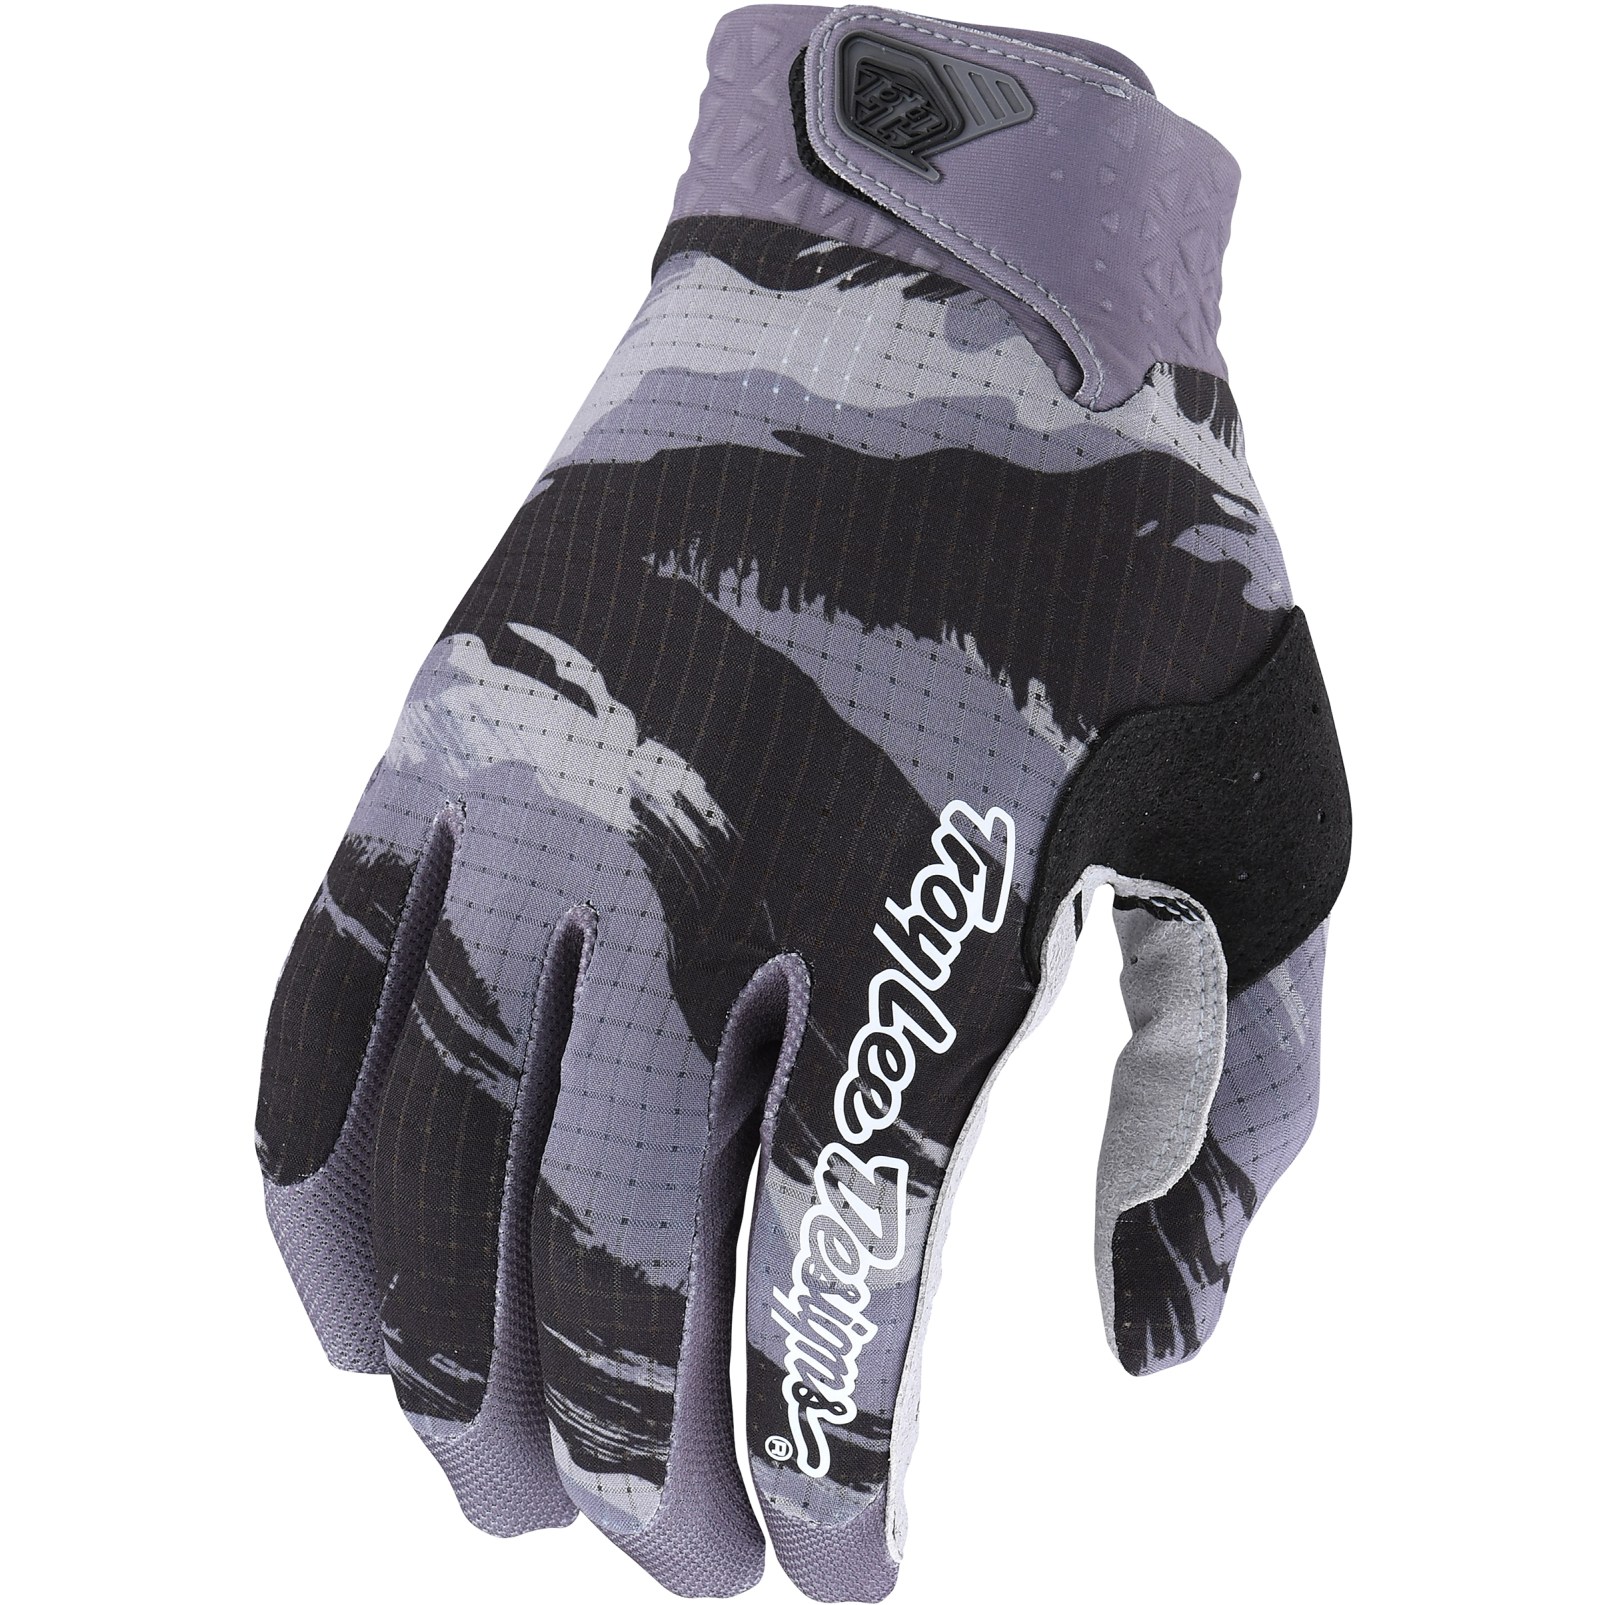 Productfoto van Troy Lee Designs Air Handschoenen - Brushed Camo Black/Gray